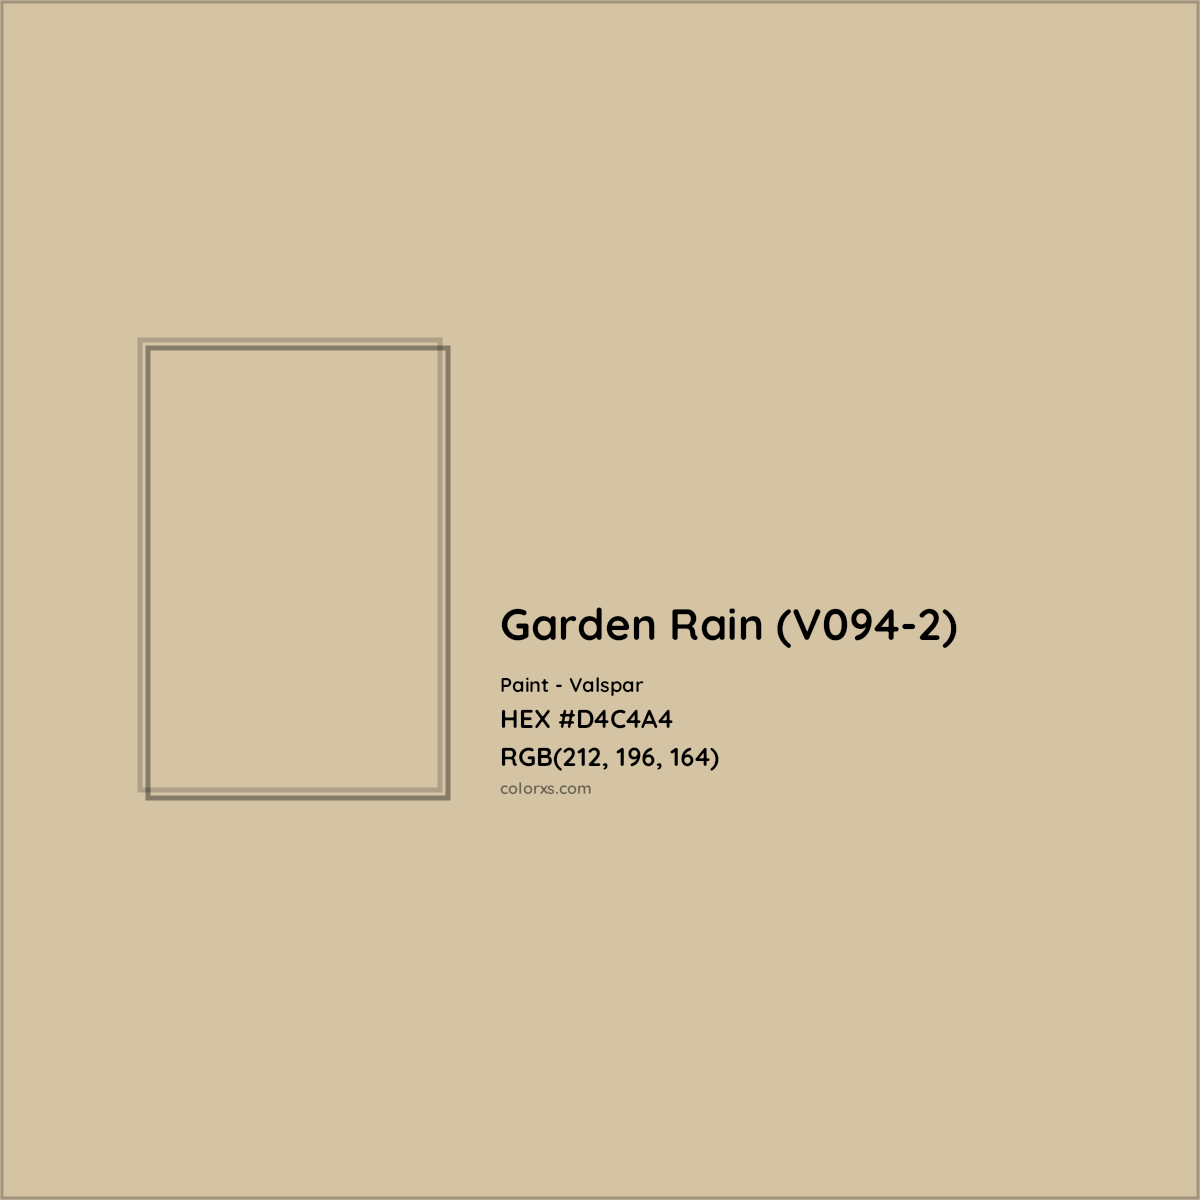 HEX #D4C4A4 Garden Rain (V094-2) Paint Valspar - Color Code